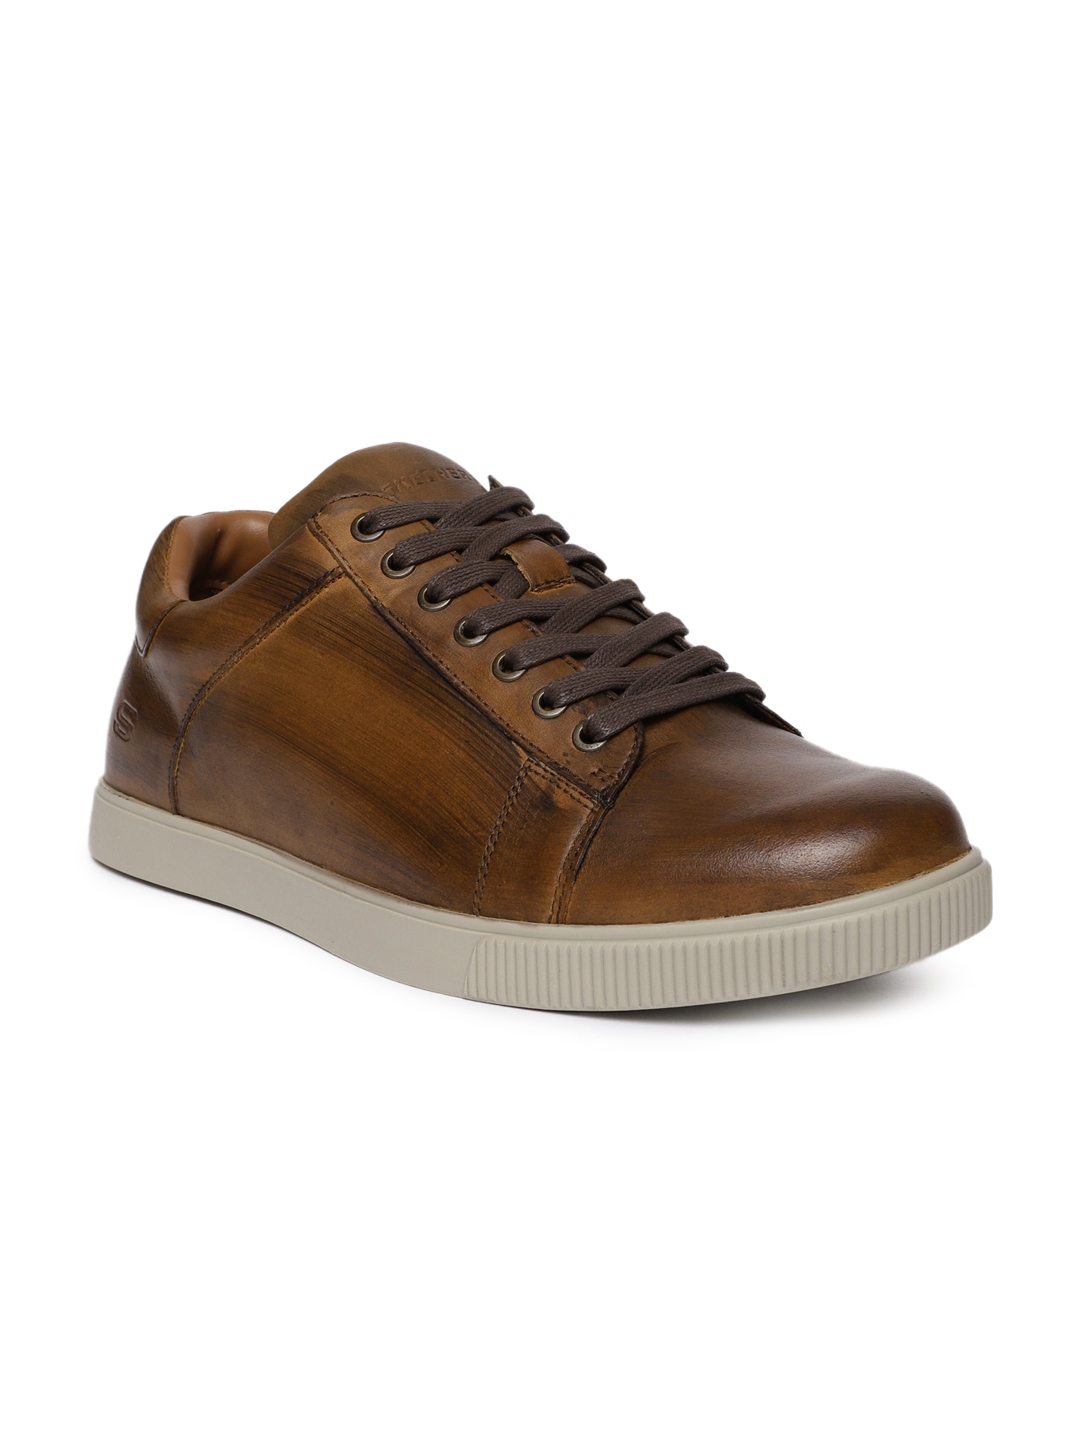 Buy Skechers Men Tan VOLDEN Sneakers - Shoes for Men 7025730 | Myntra